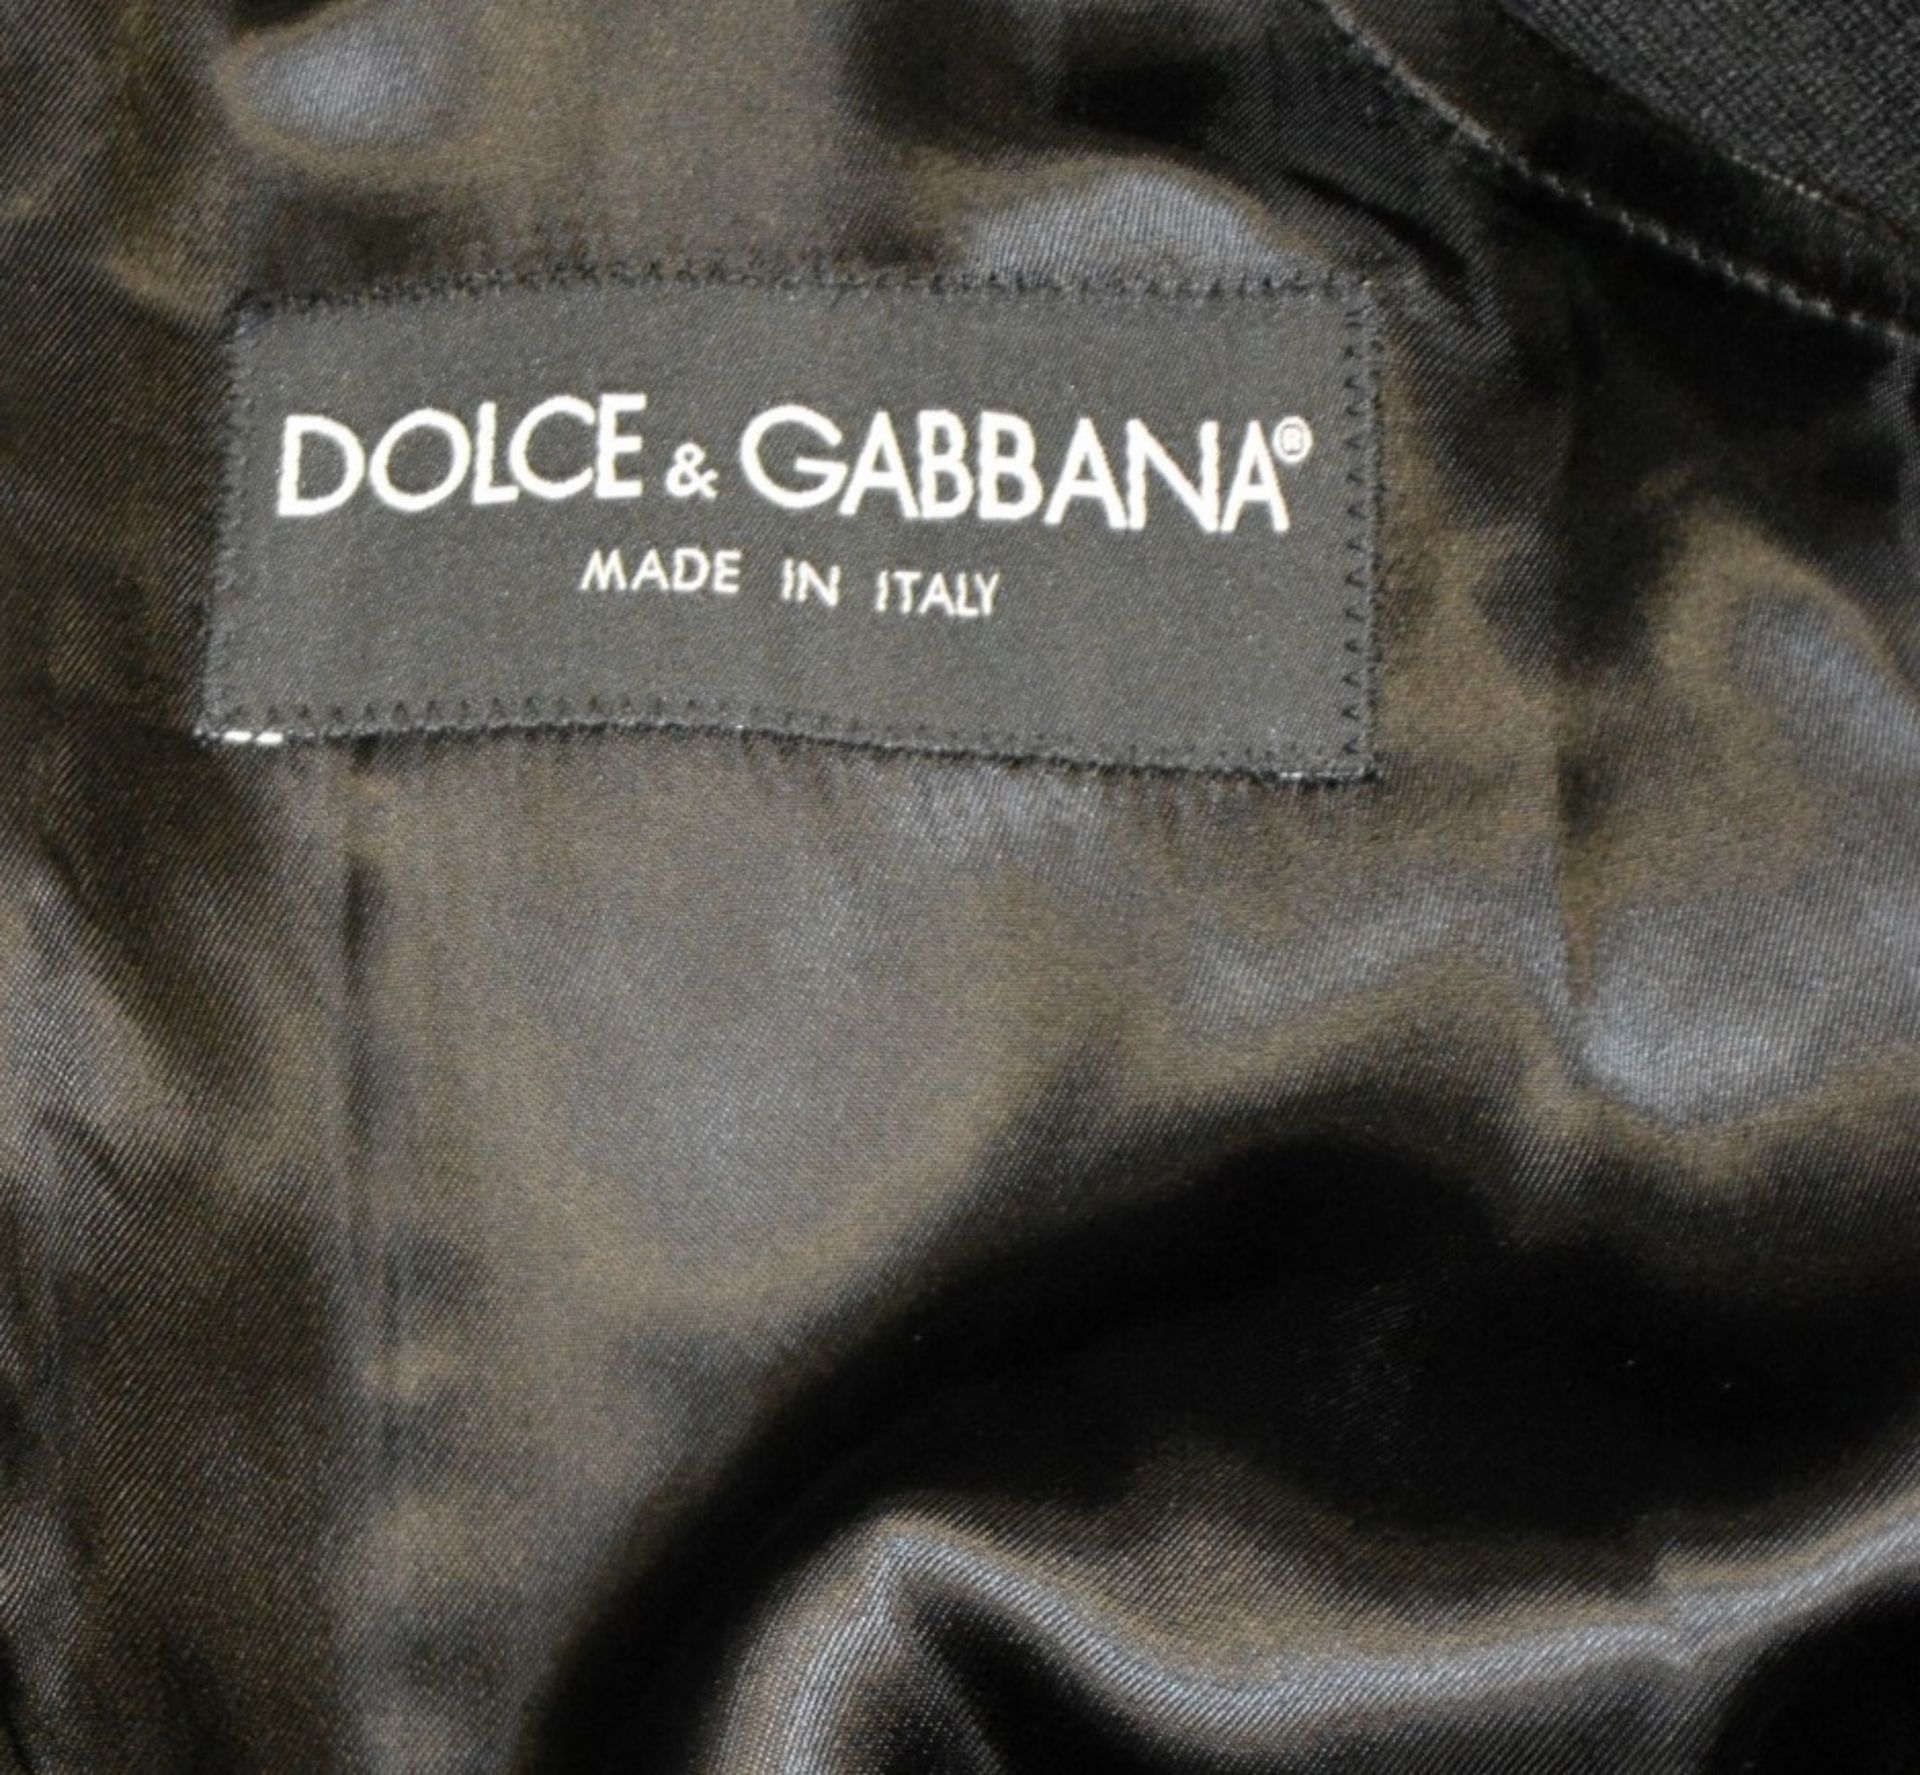 1 x Men's Genuine Dolce & Gabbana Hooded Gilet In Black & Grey - Size: 50 - Image 5 of 9